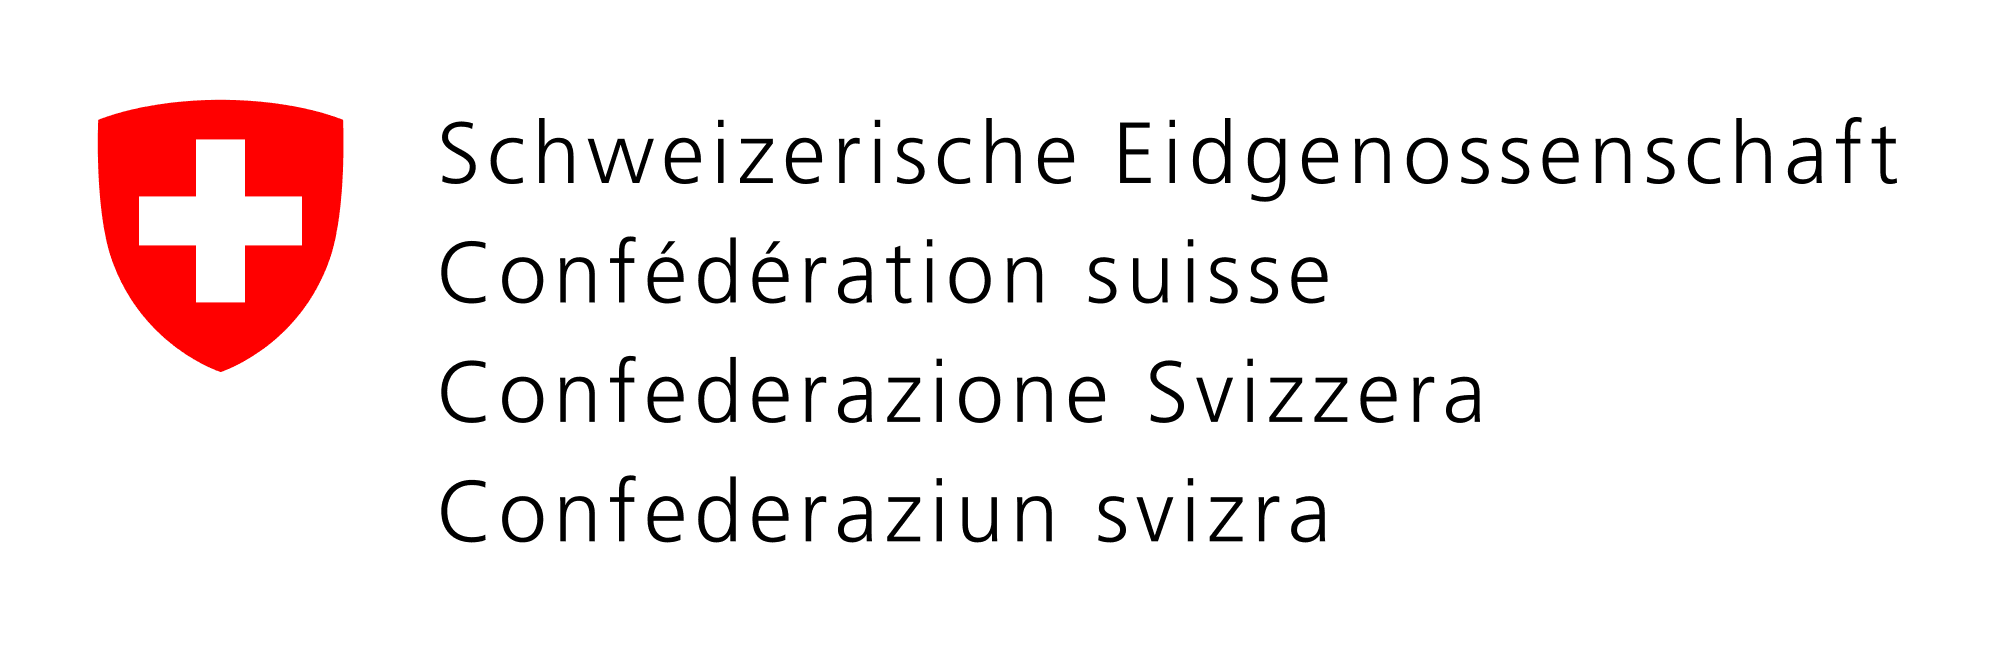 شعار الاتحاد السويسري باللغات الأربعة الرسمية